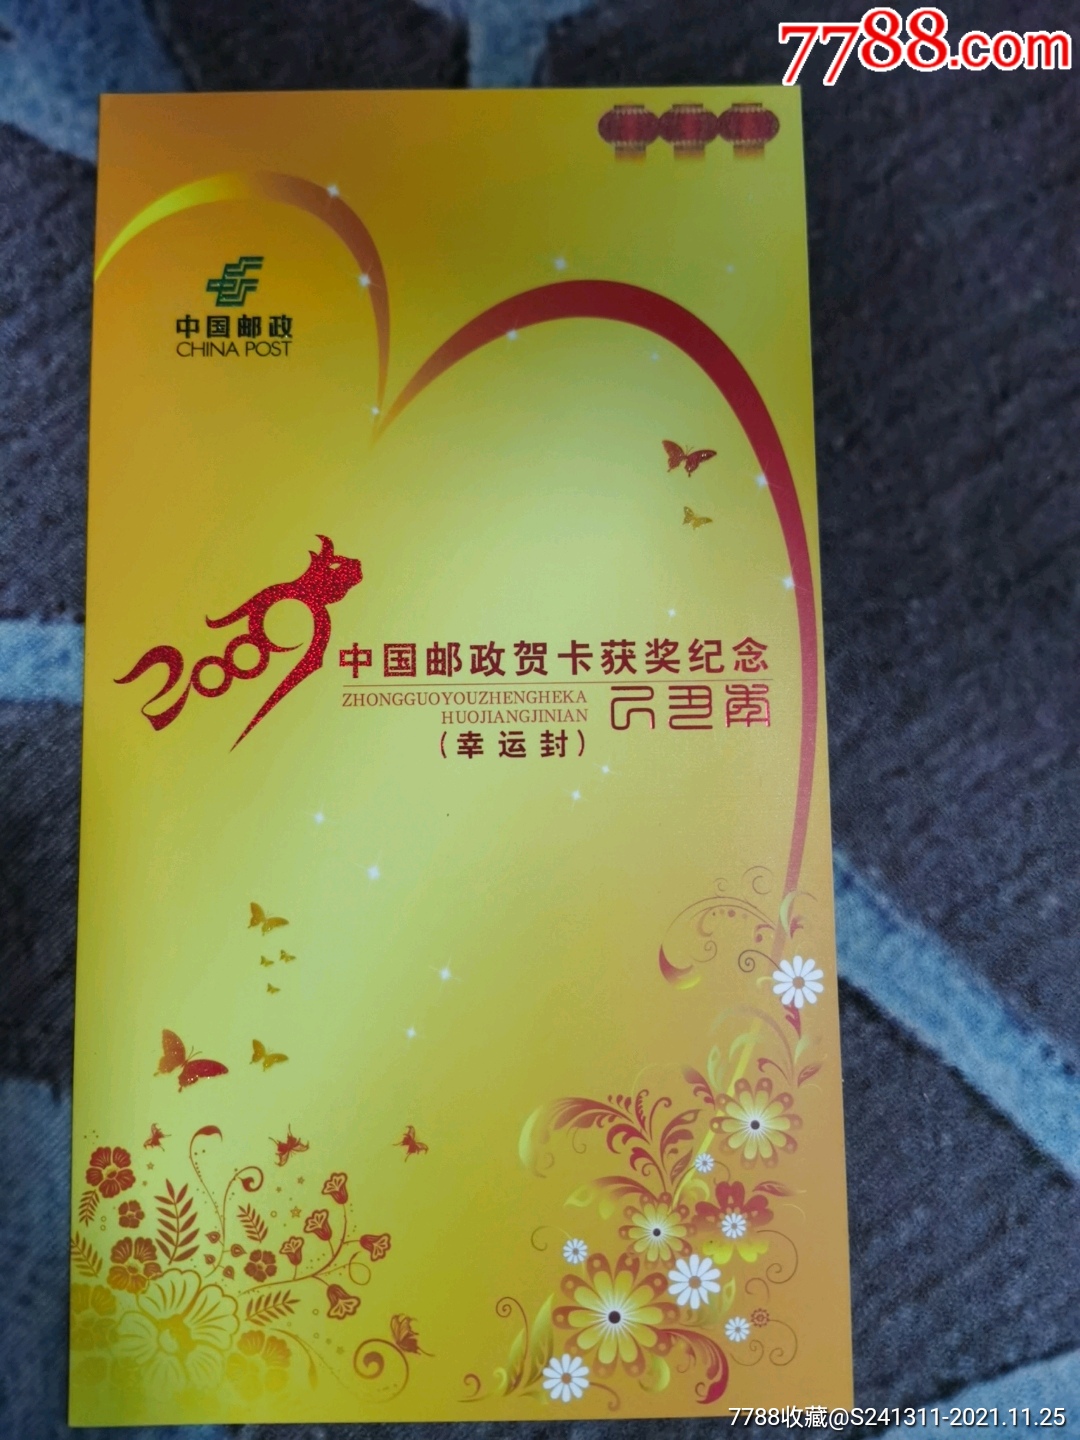 2009年中国邮政贺卡获奖纪念幸运封